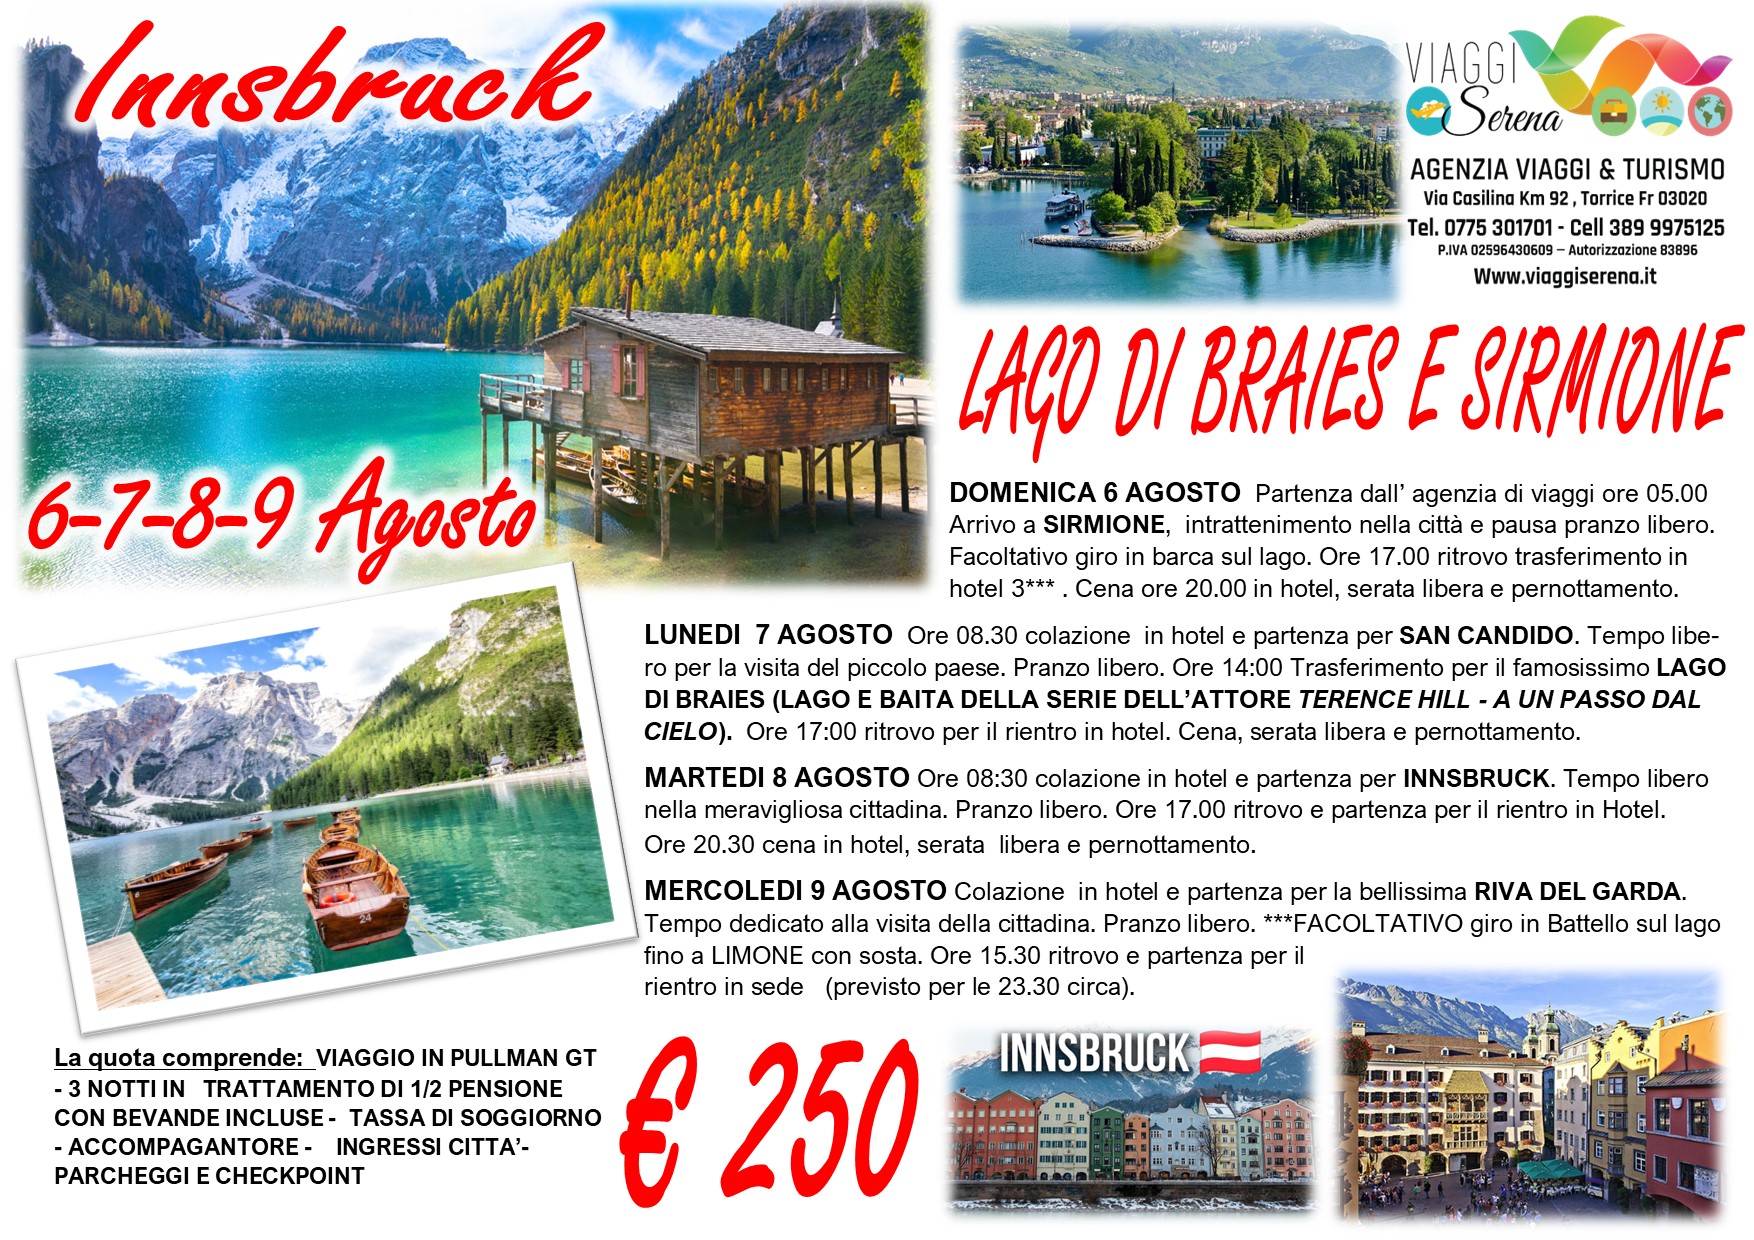 Viaggi di Gruppo: Innsbruck , Lago di Braies, Sirmione & Riva del Garda 6-7-8-9 Agosto € 250,00